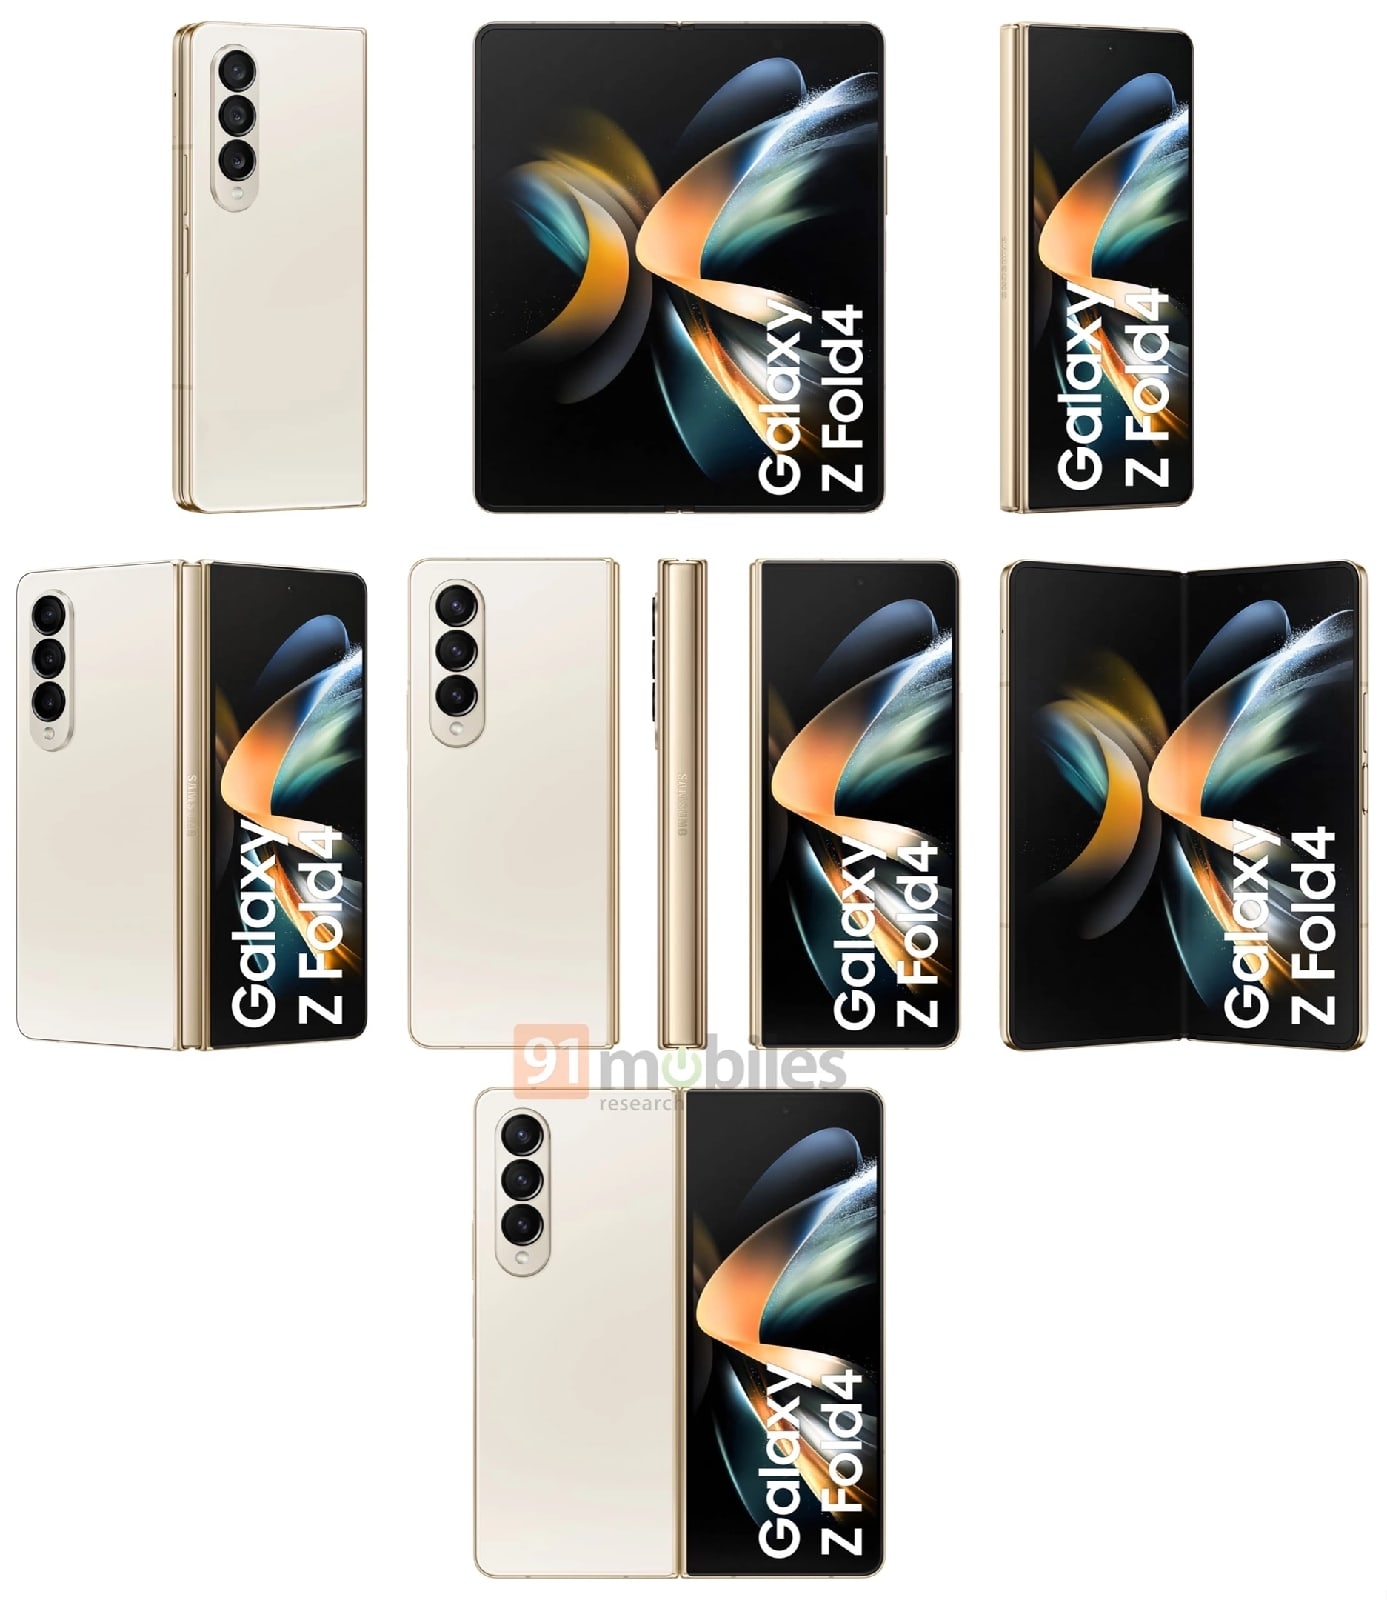 Ловите официальные рендеры складных флагманов Samsung Galaxy Z Fold4 и Z Flip4 от инсайдера Эвана Бласса.